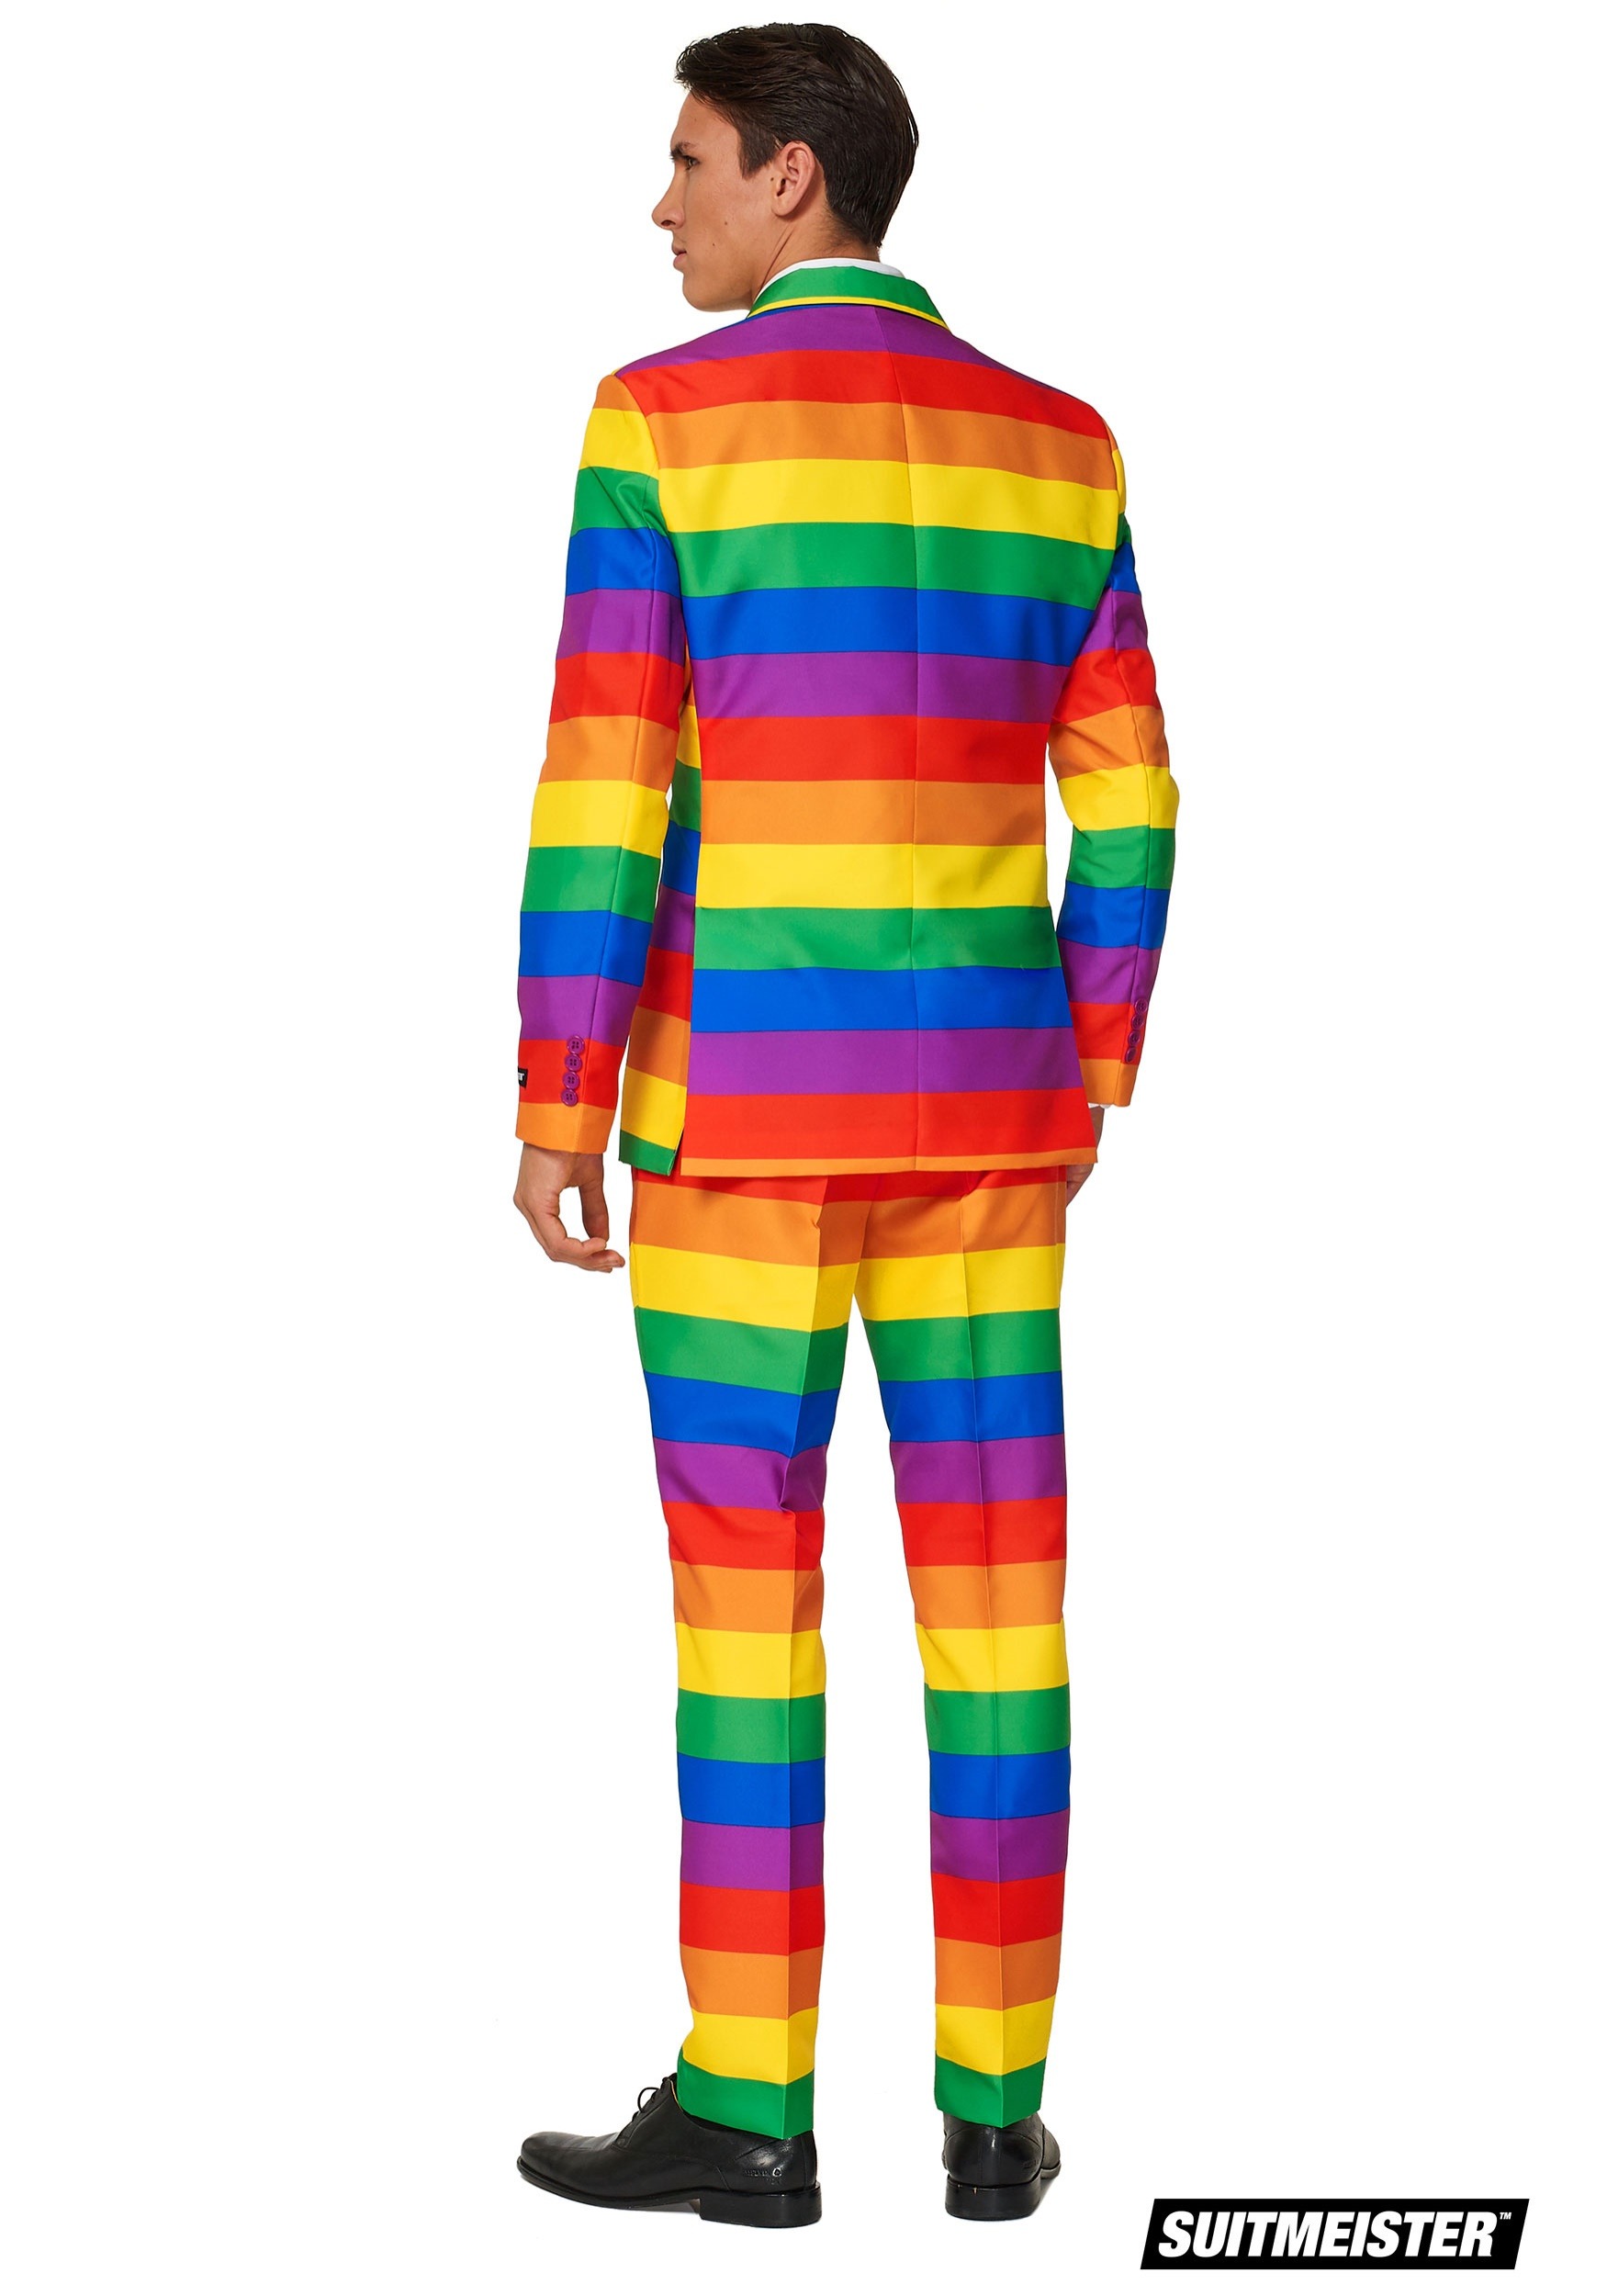 Suitmeister Men's Rainbow Suit Fancy Dress Costume